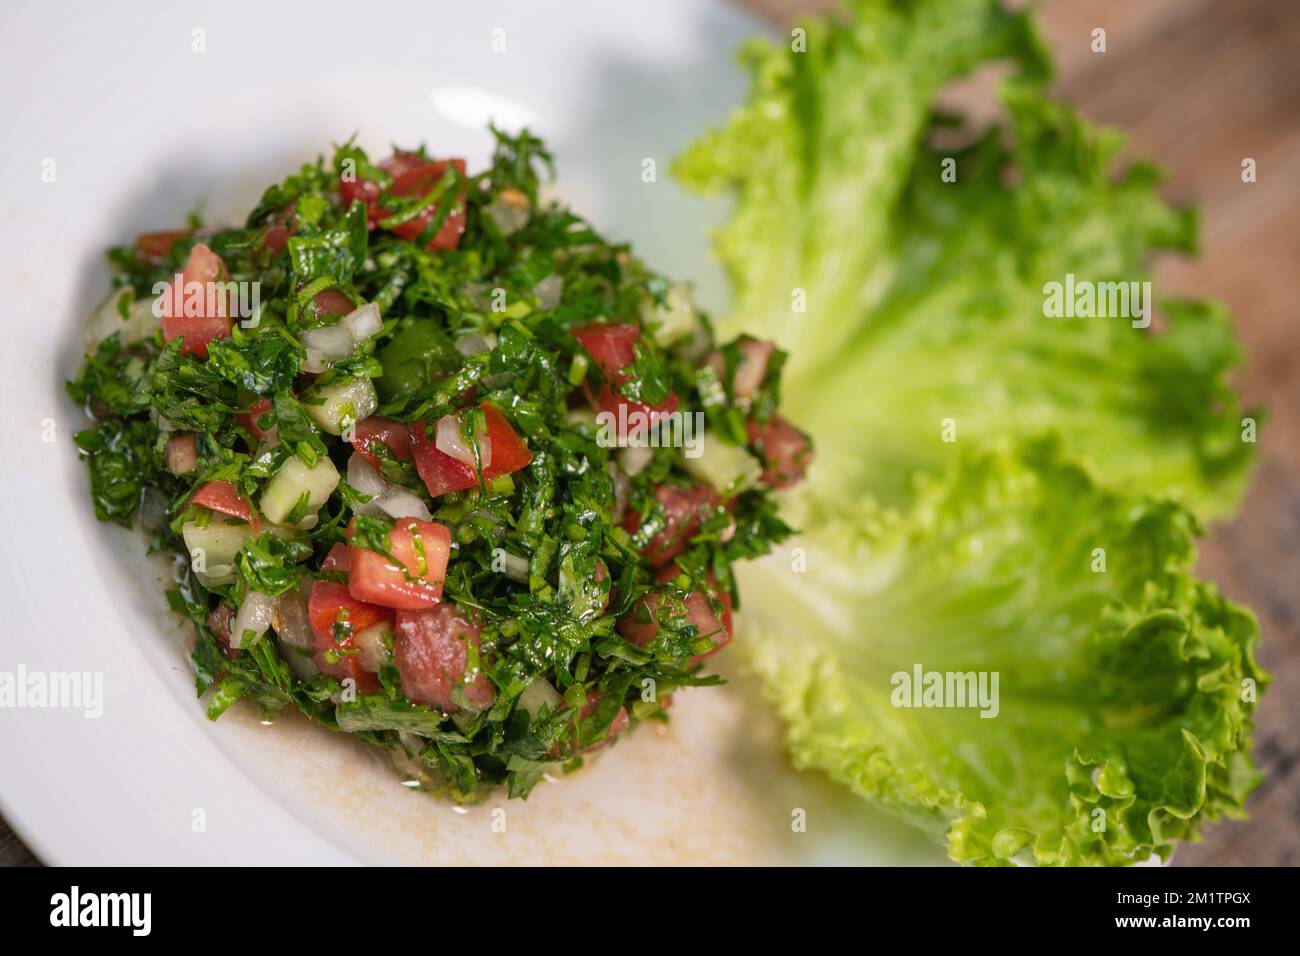 Plat de salade de tabouleh du Moyen-Orient avec laitue sur fond blanc. Banque D'Images